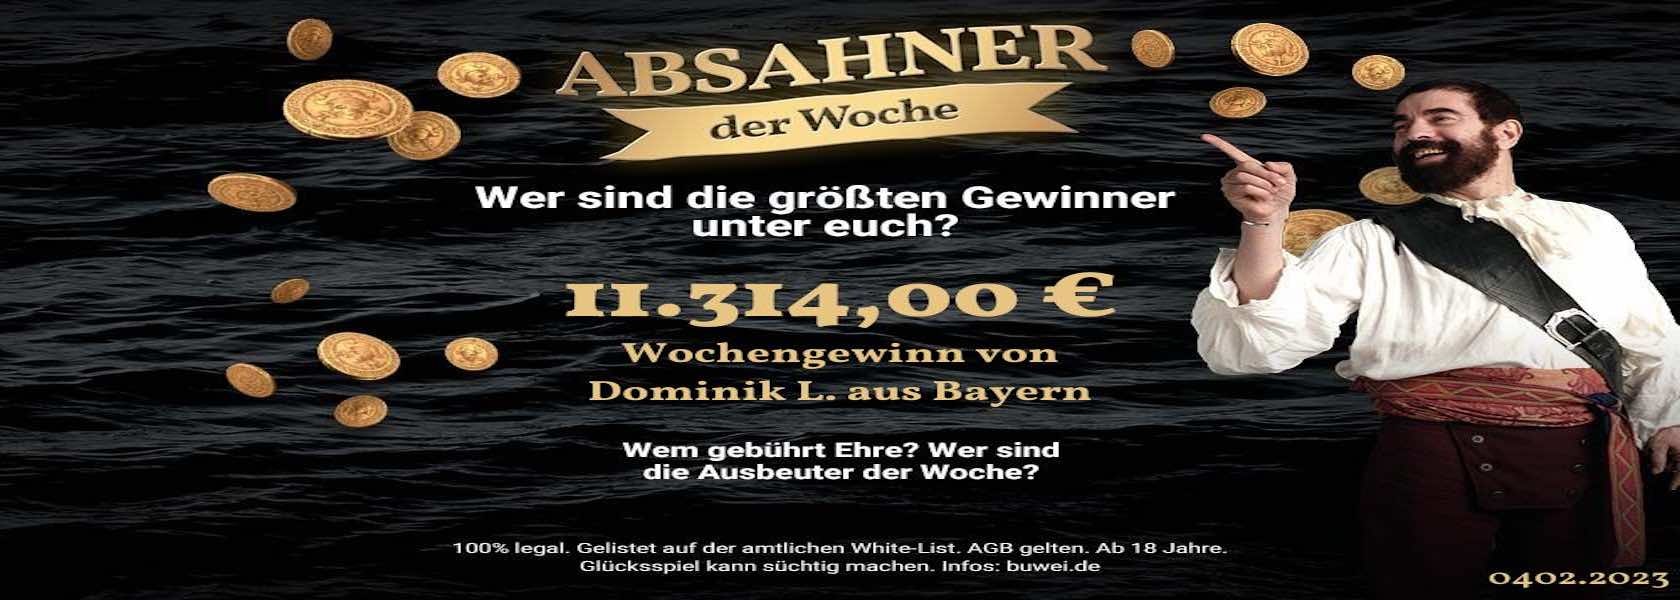 absahner-der-woche-04022023-1680x600-jpi